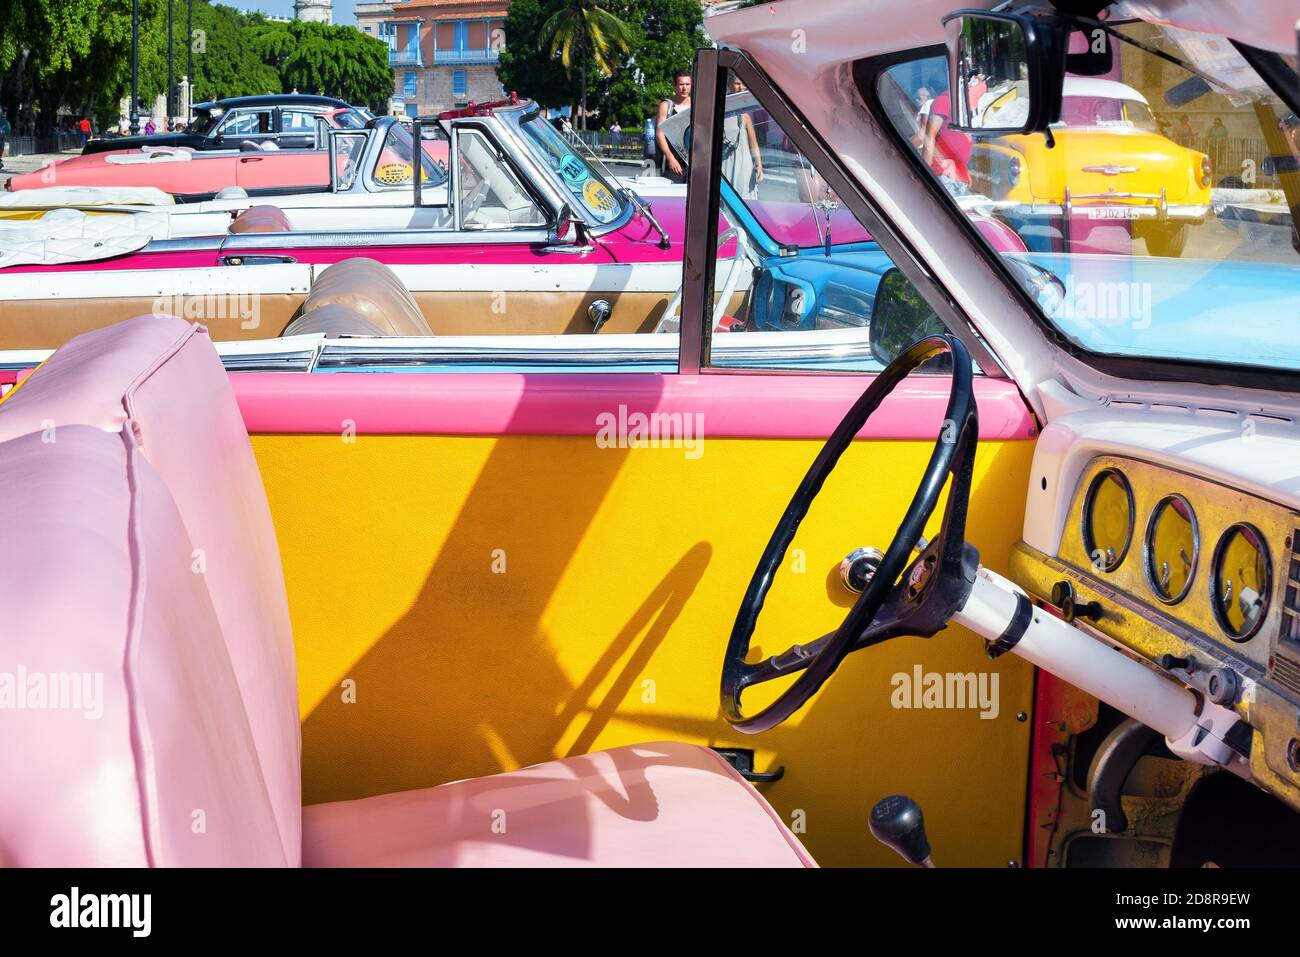 Vue intérieure d'une voiture américaine vintage colorée garée dans une rue de la Havane, Cuba. Taxi cubain. Banque D'Images